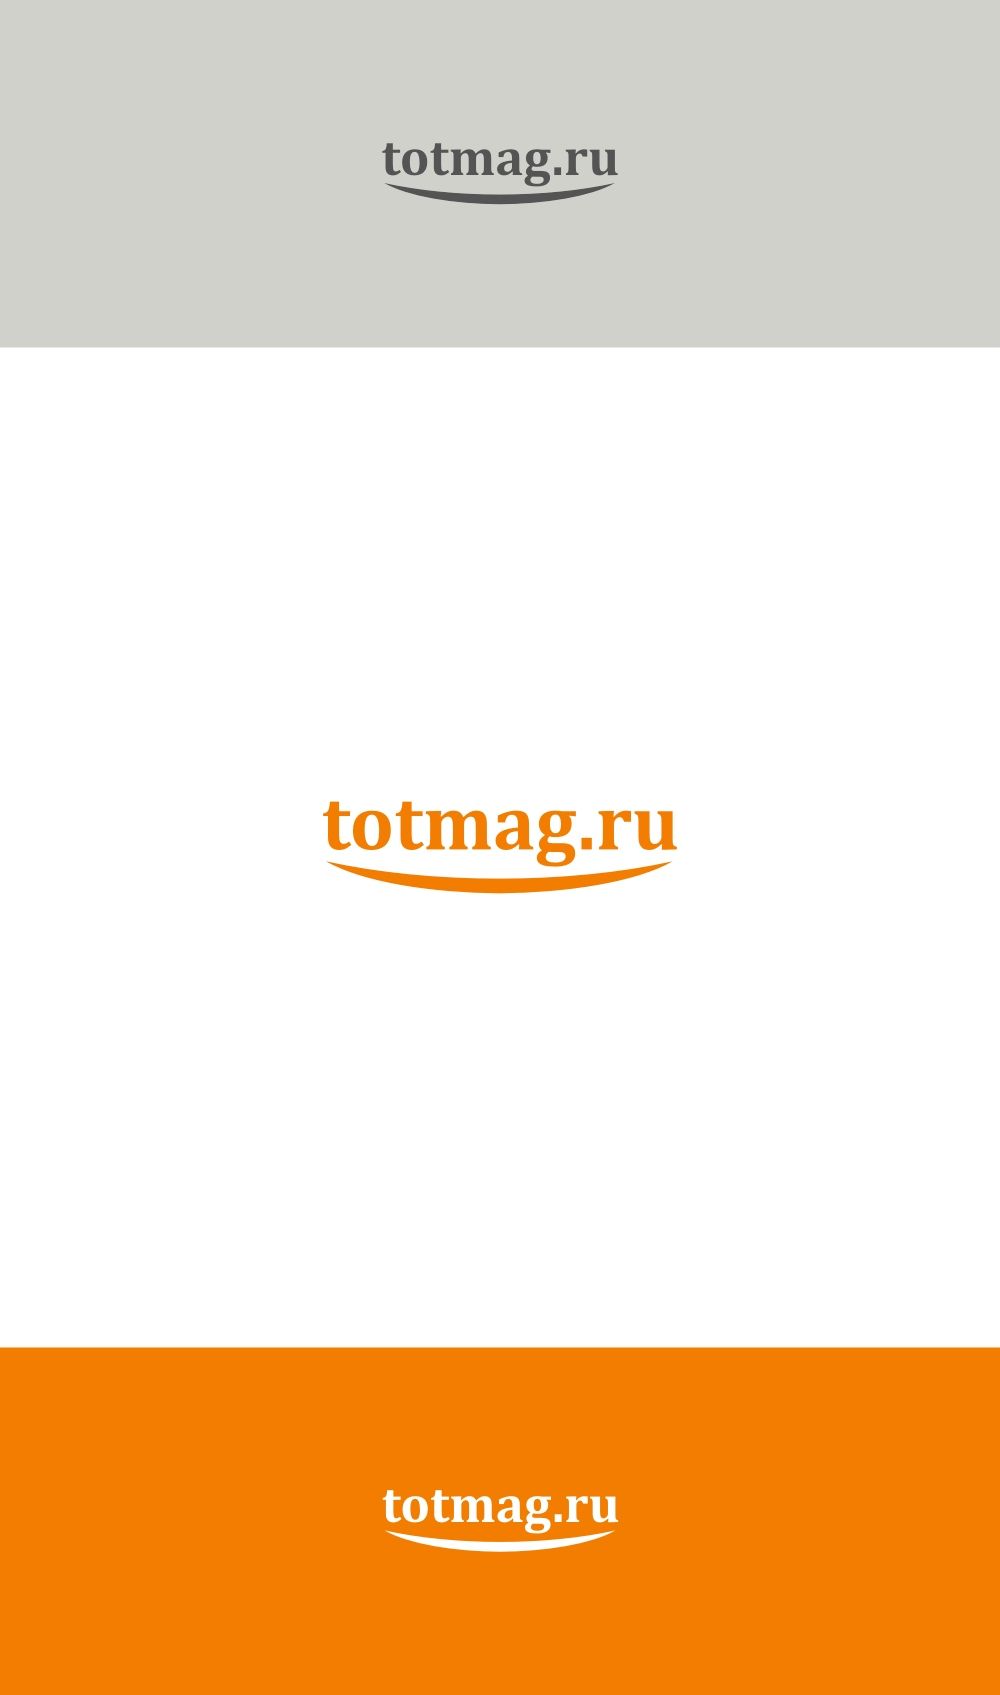 Логотип для интернет магазина totmag.ru - дизайнер 4shark